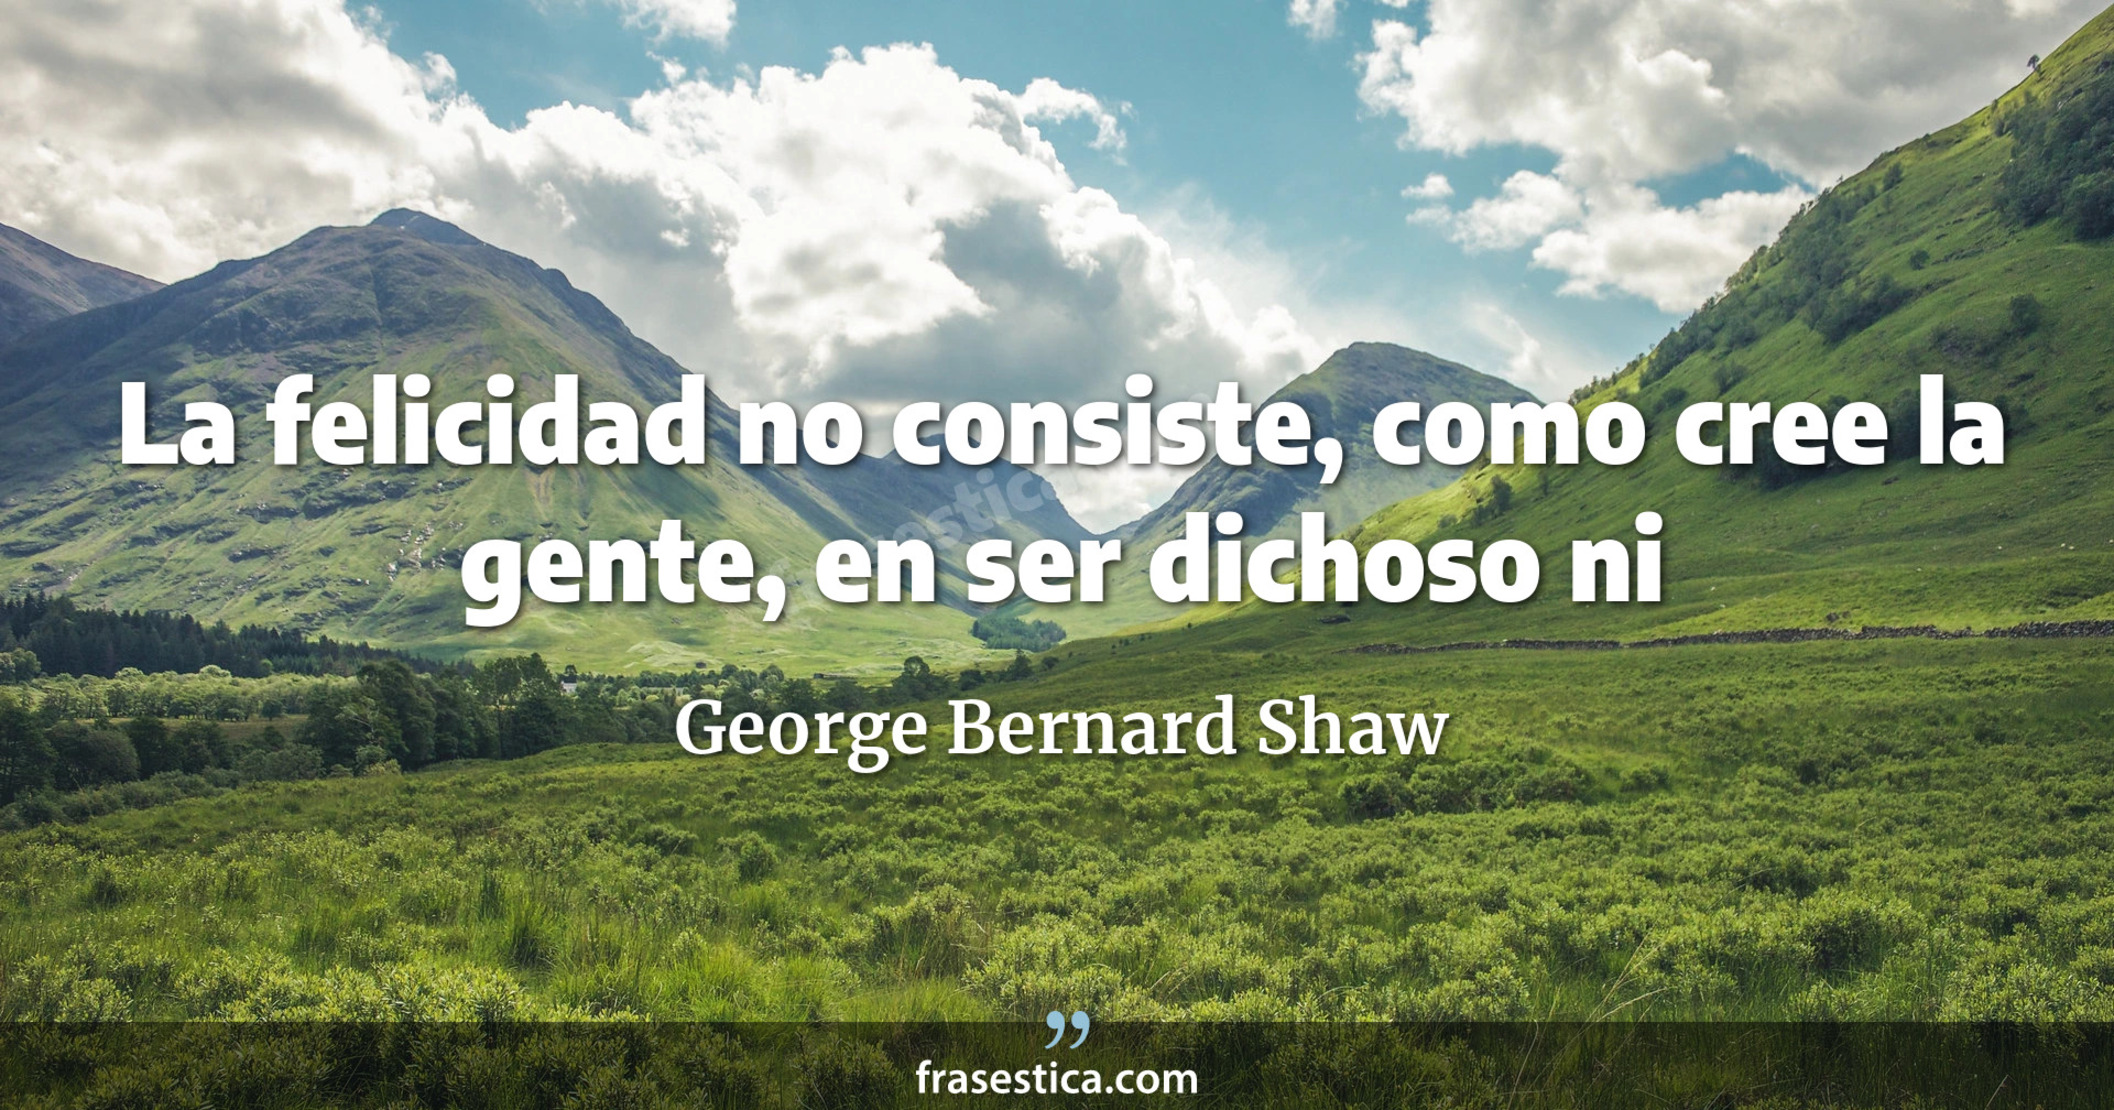 La felicidad no consiste, como cree la gente, en ser dichoso ni
     - George Bernard Shaw